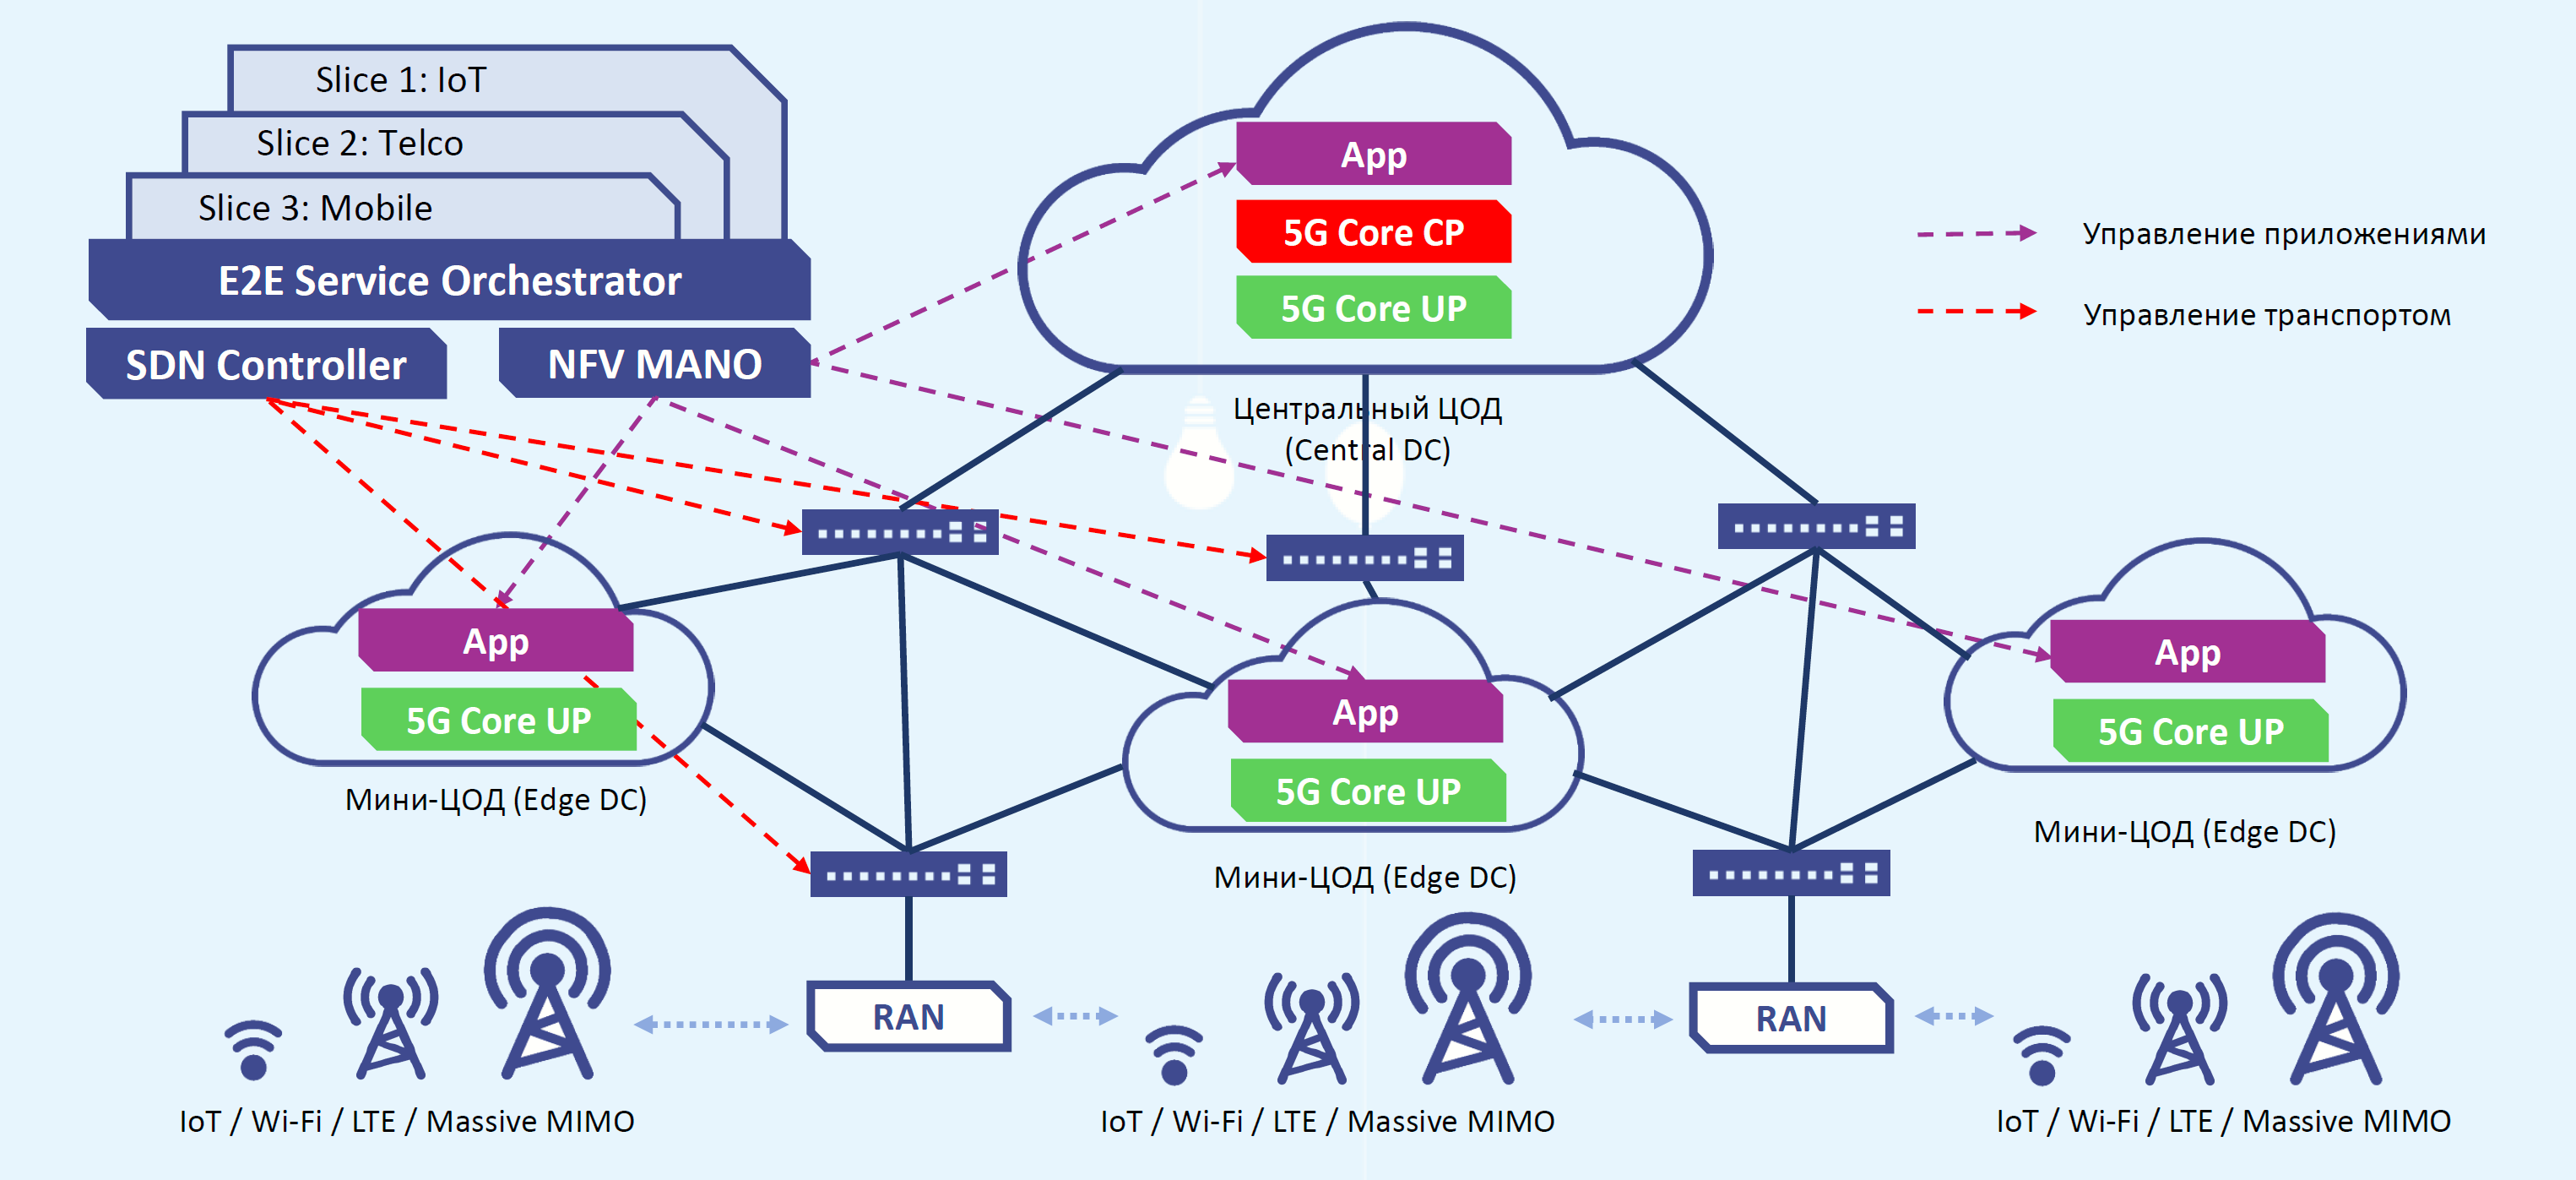 3 ж связь. Схема сети 5g. Архитектура сети 5g. Структура сотовой связи 5g. Архитектура сети 5g NSA.